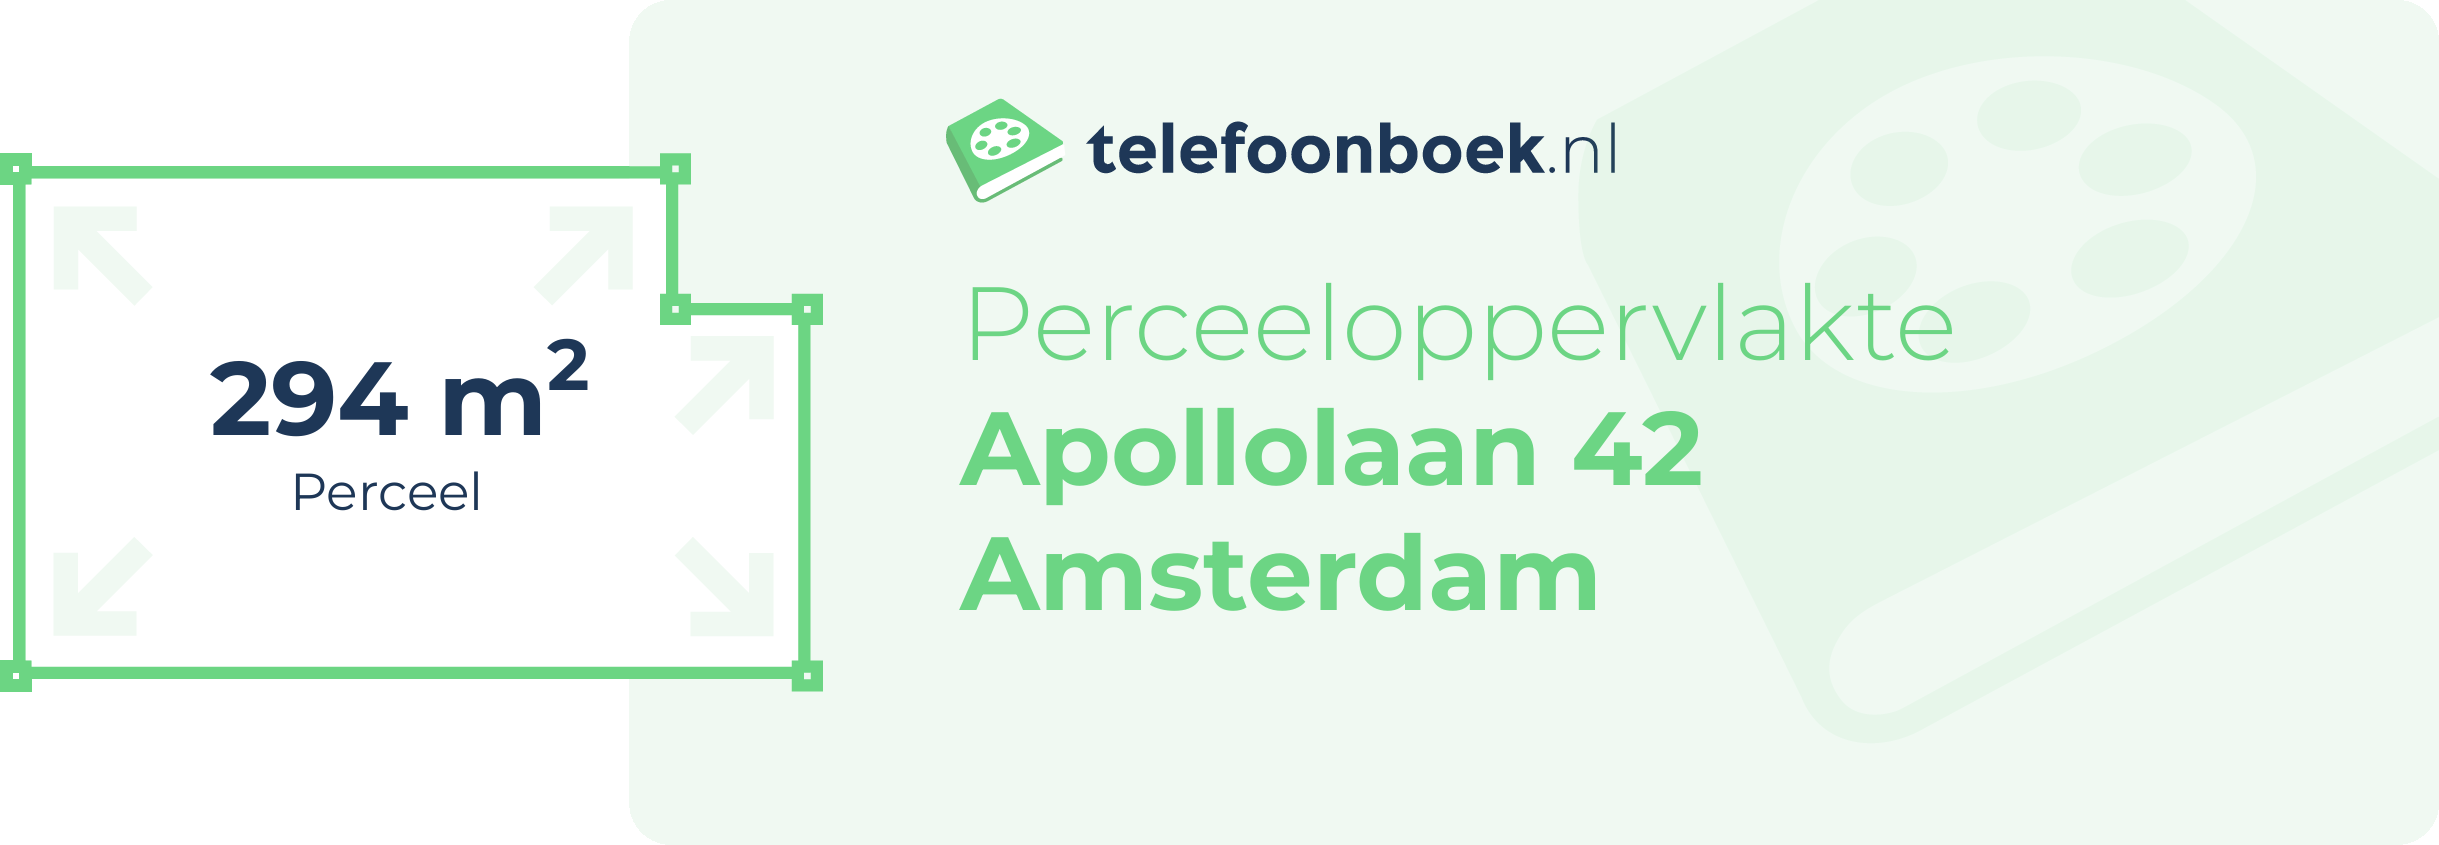 Perceeloppervlakte Apollolaan 42 Amsterdam